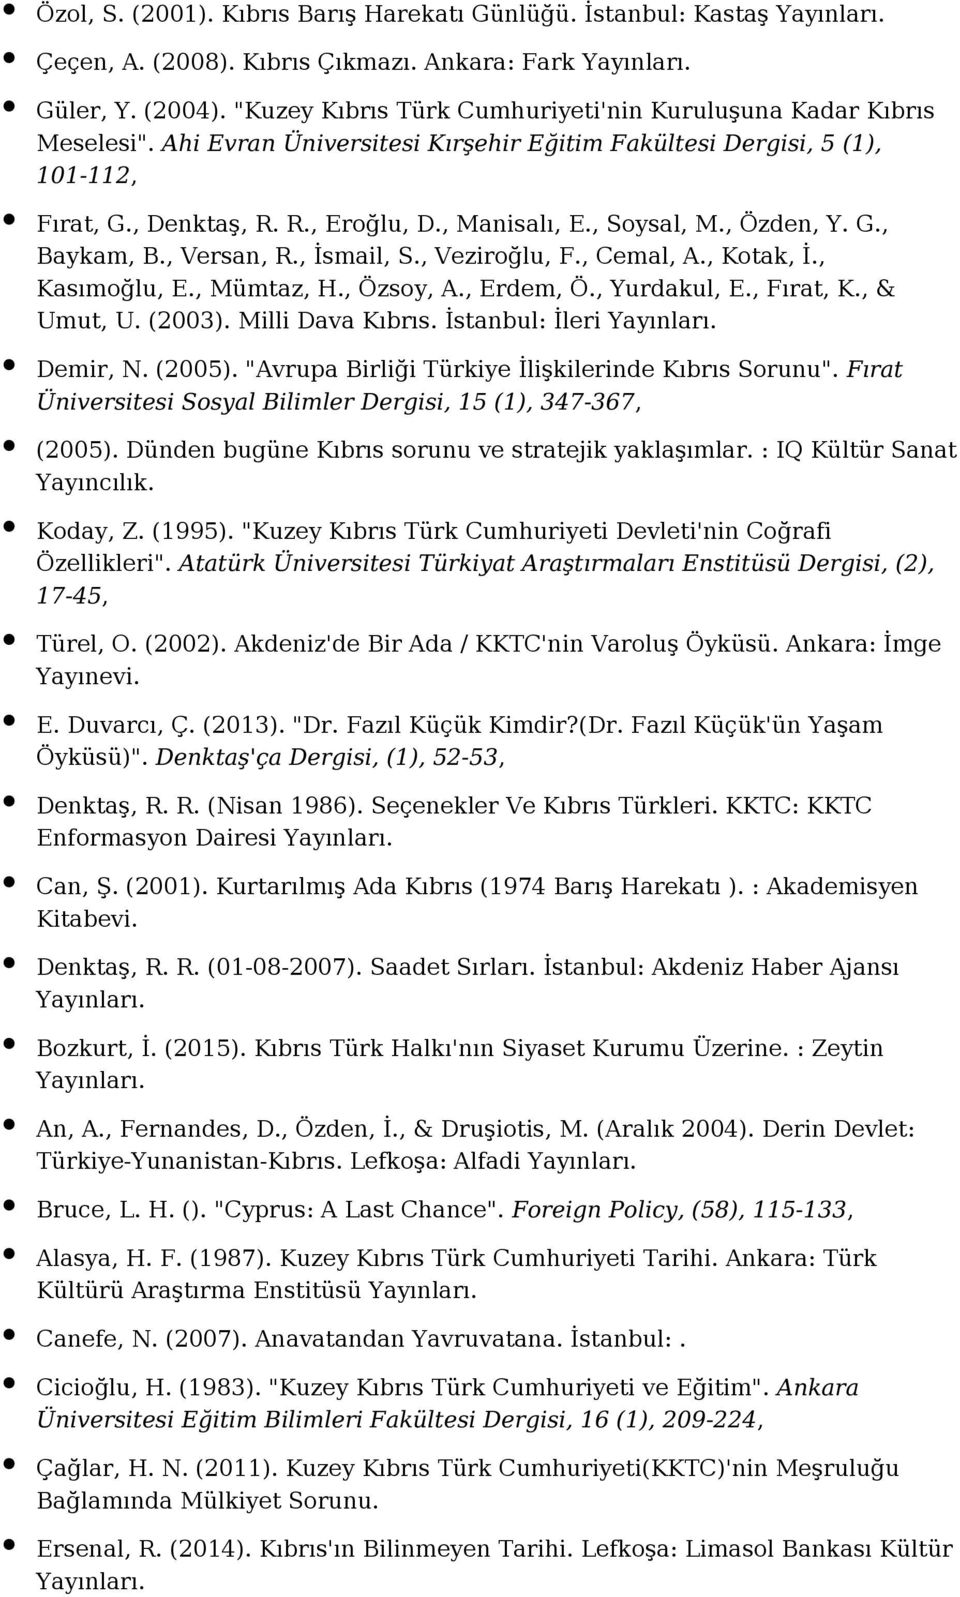 , Veziroğlu, F., Cemal, A., Kotak, İ., Kasımoğlu, E., Mümtaz, H., Özsoy, A., Erdem, Ö., Yurdakul, E., Fırat, K., & Umut, U. (2003). Milli Dava Kıbrıs. İstanbul: İleri Demir, N. (2005).